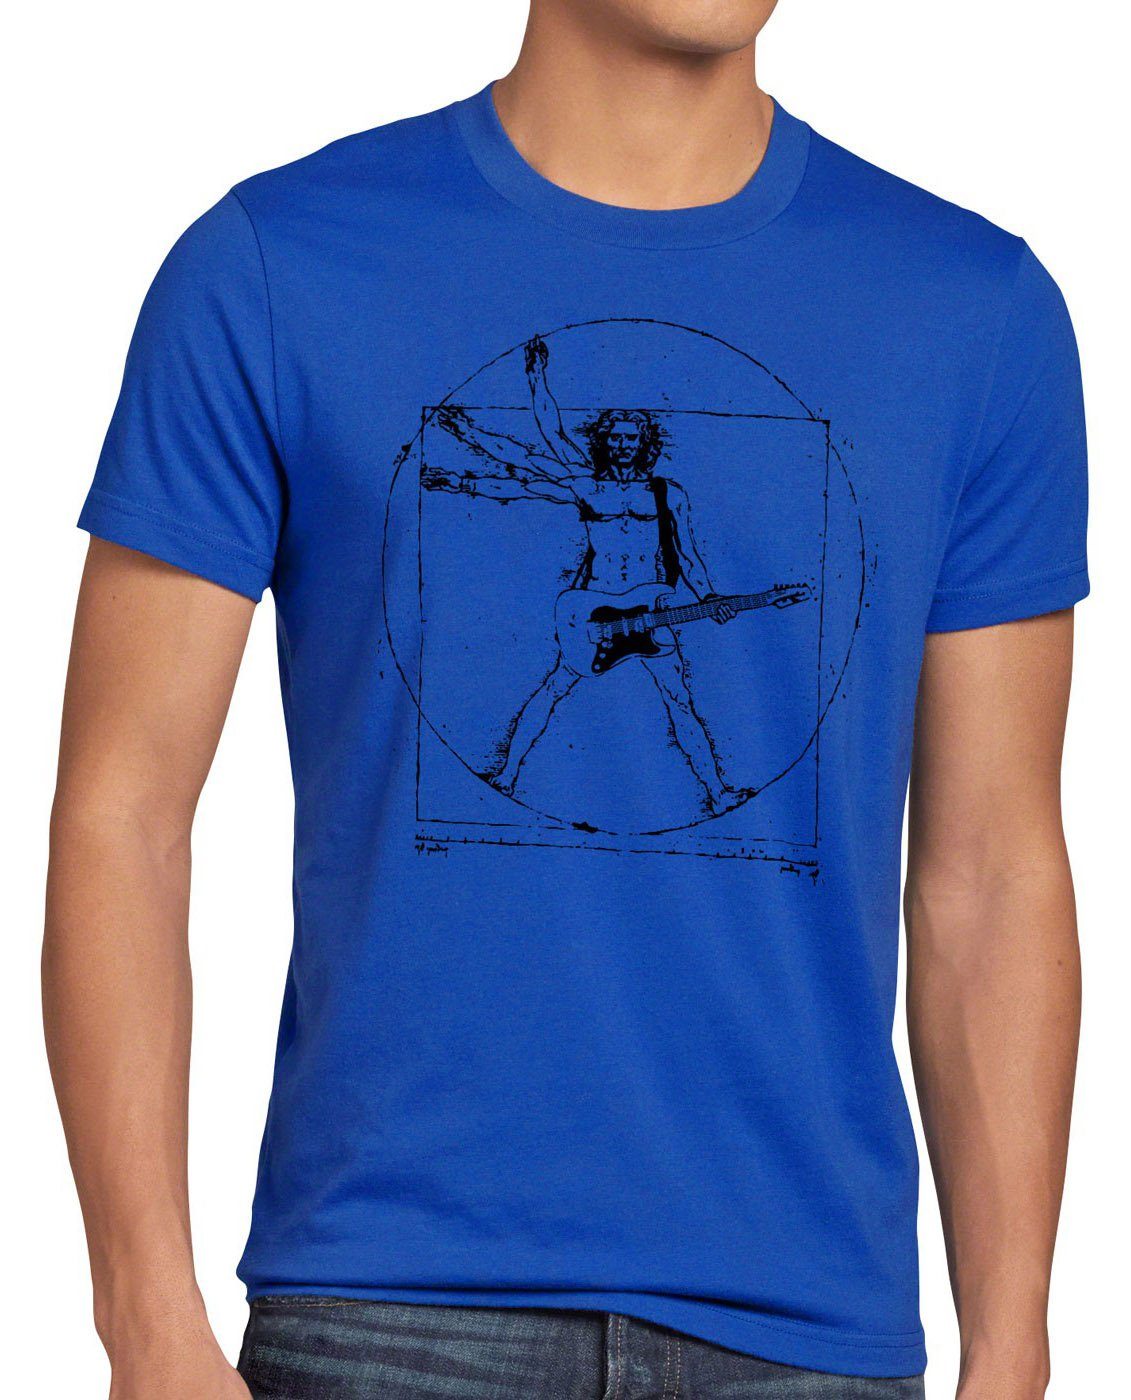 style3 Print-Shirt Herren T-Shirt Da Vinci Rock T-Shirt musik festival gitarre vinyl metal open air wacken mensch blau